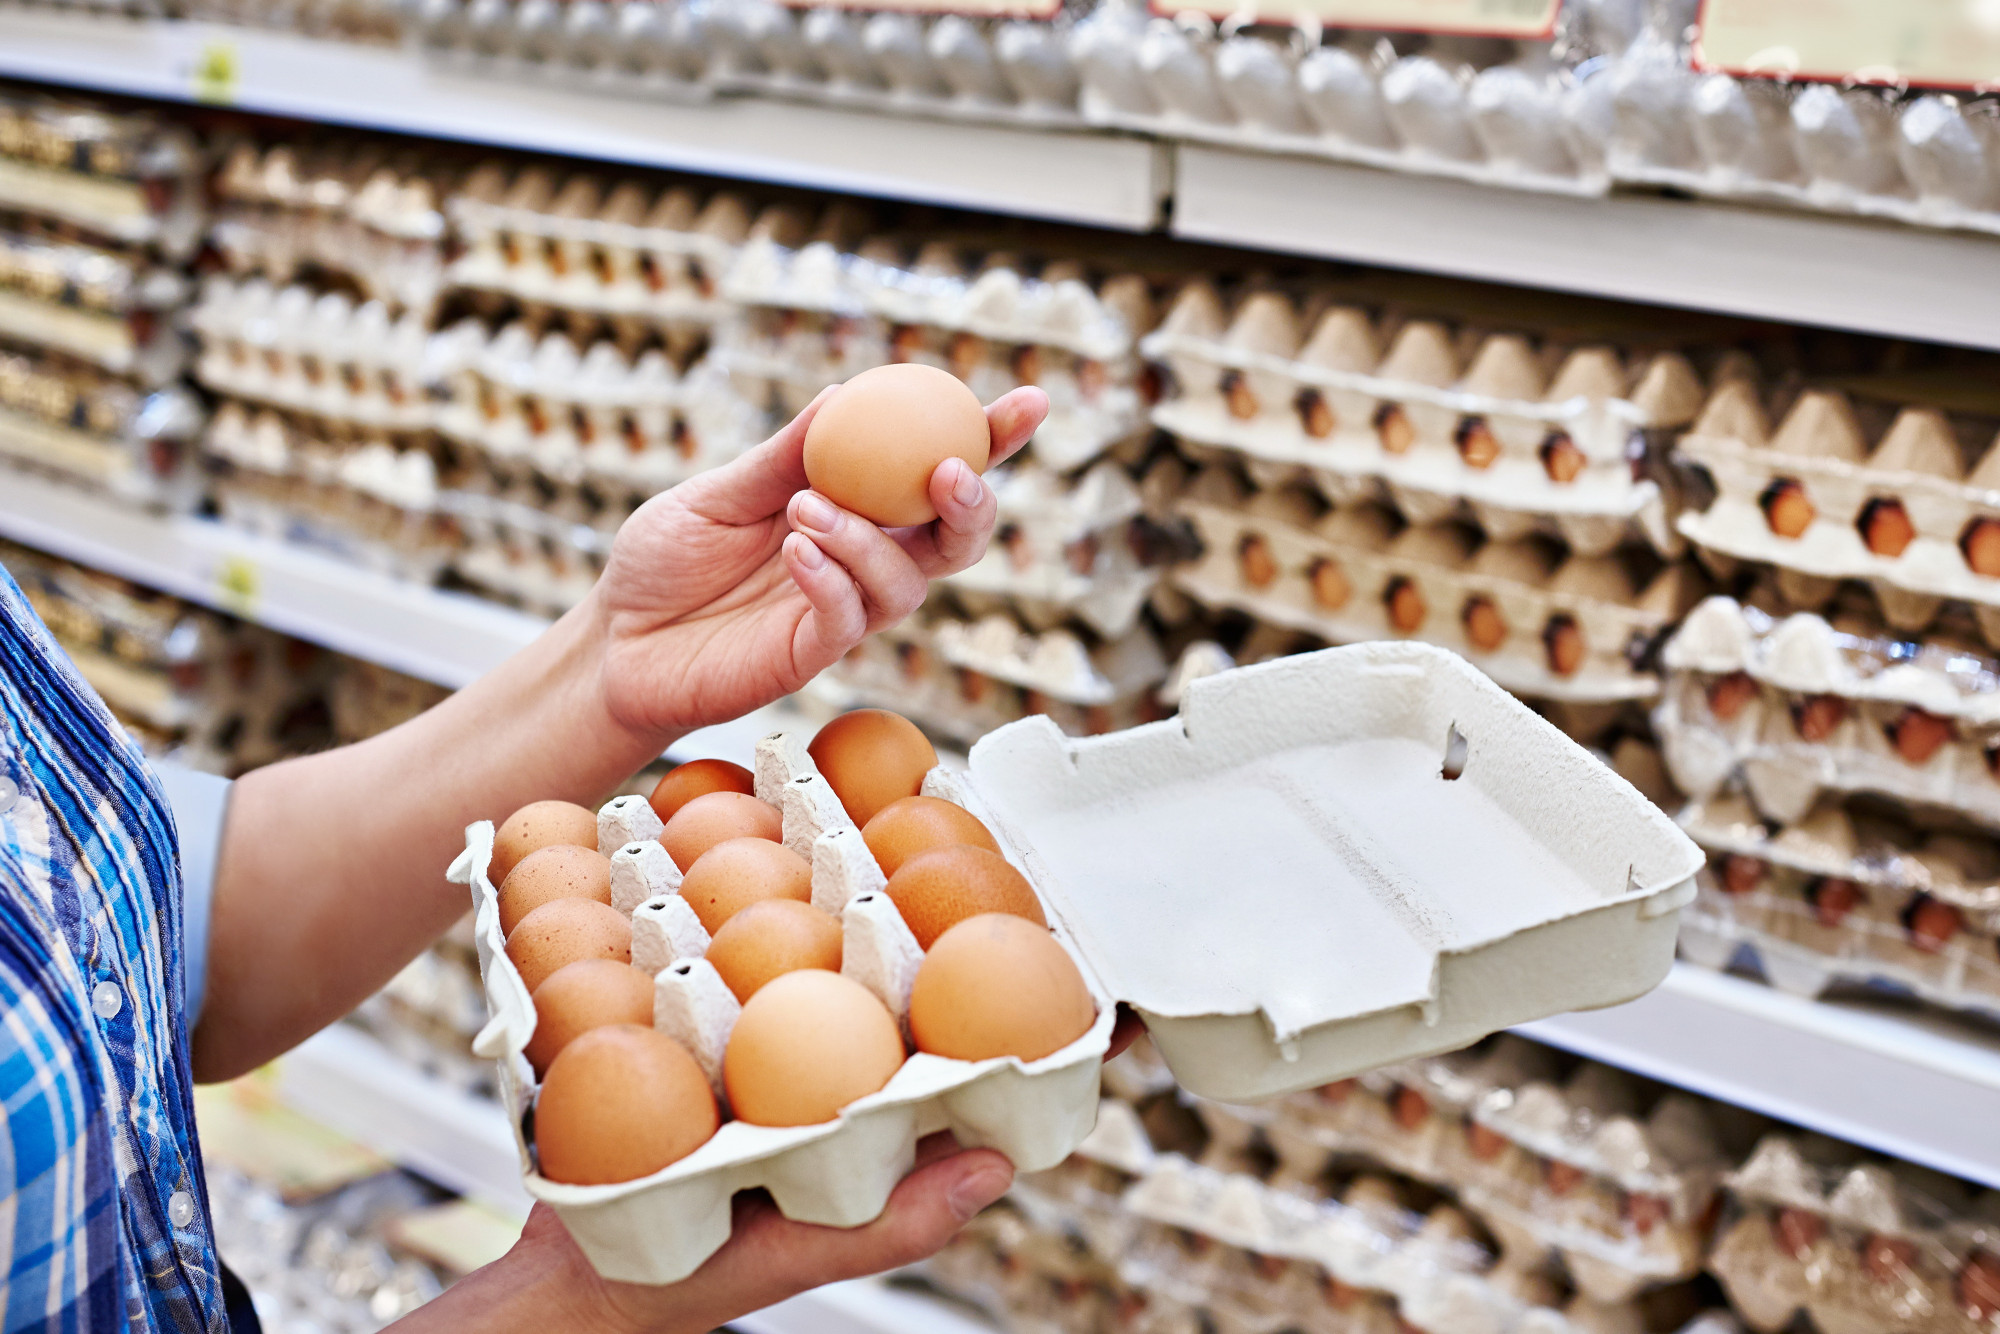 Trứng gà bán trong siêu thị vẫn thường gây nhầm lẫn cho khách hàng - Ảnh: Shutterstock